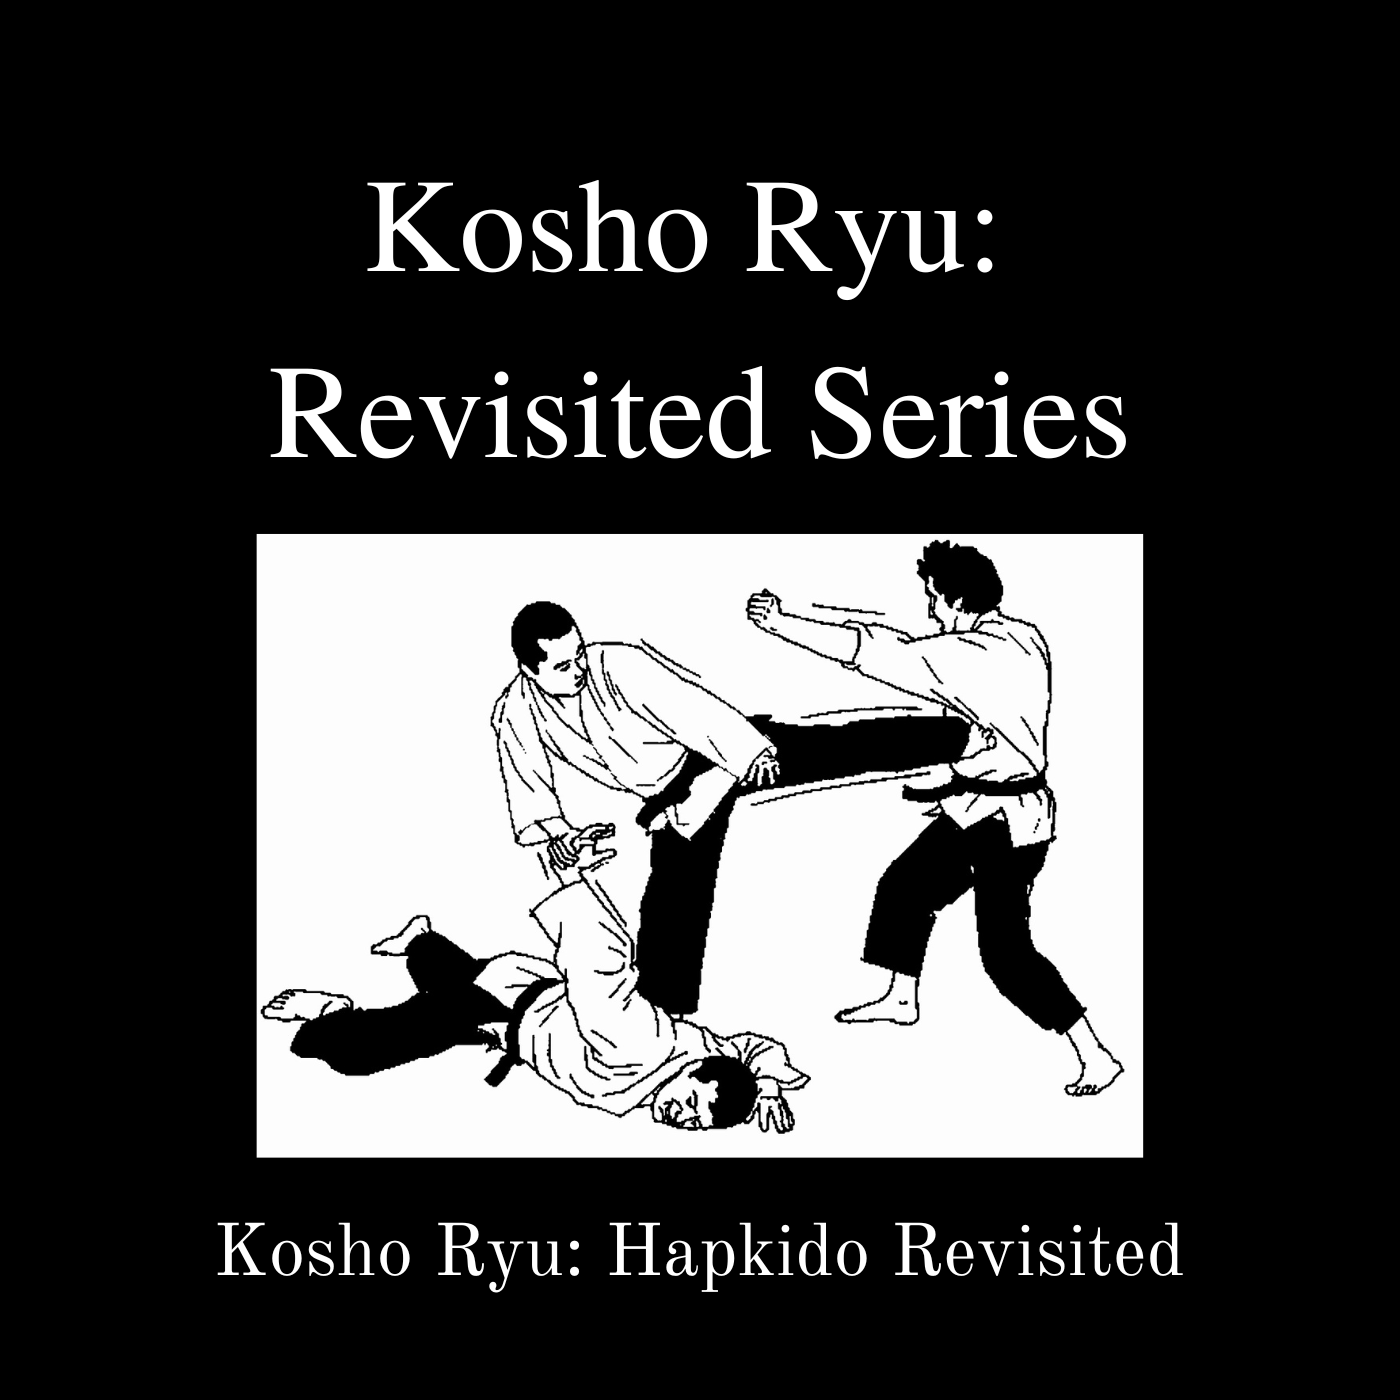 * Kosho Ryu Hapkido Revisited